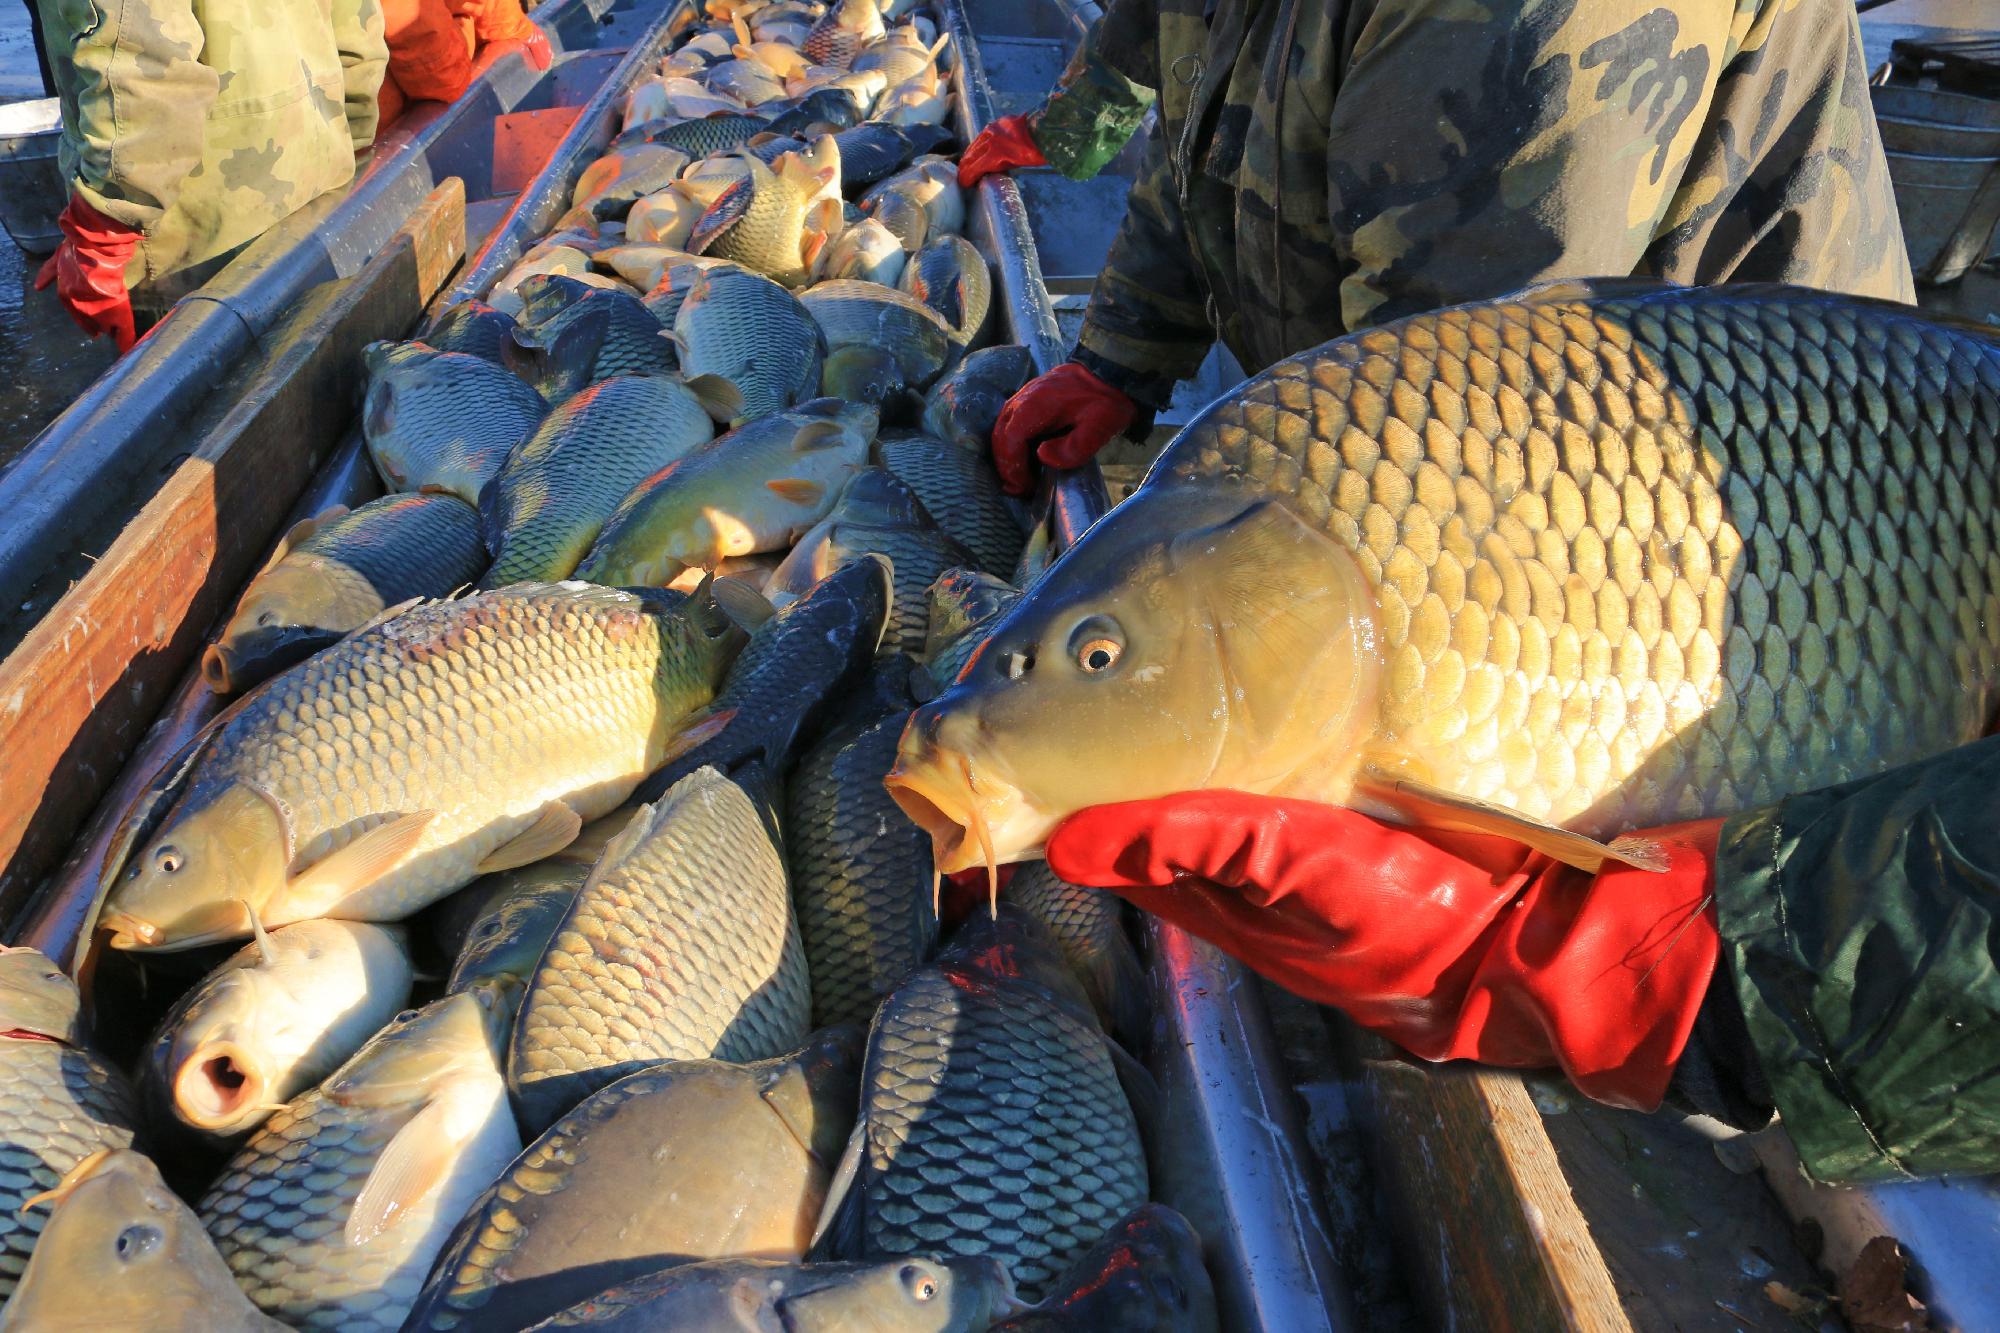 Több száz mázsa halat szállítanak naponta az üzletekbe a Hortobágyról